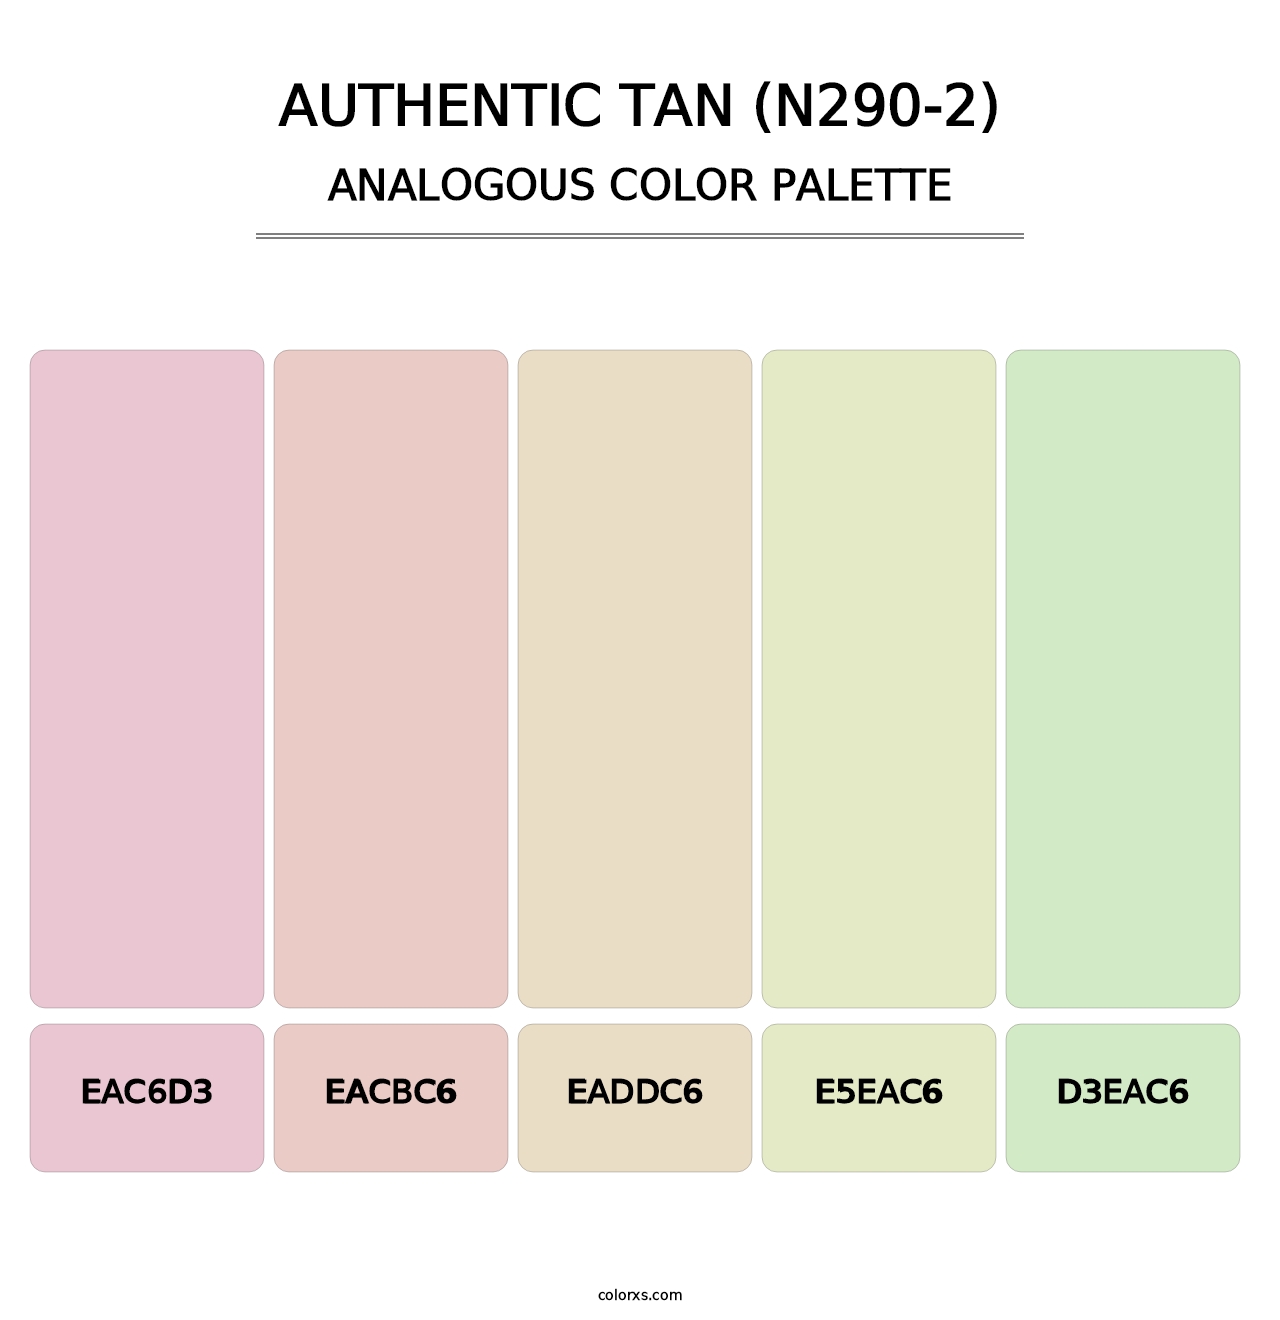 Authentic Tan (N290-2) - Analogous Color Palette